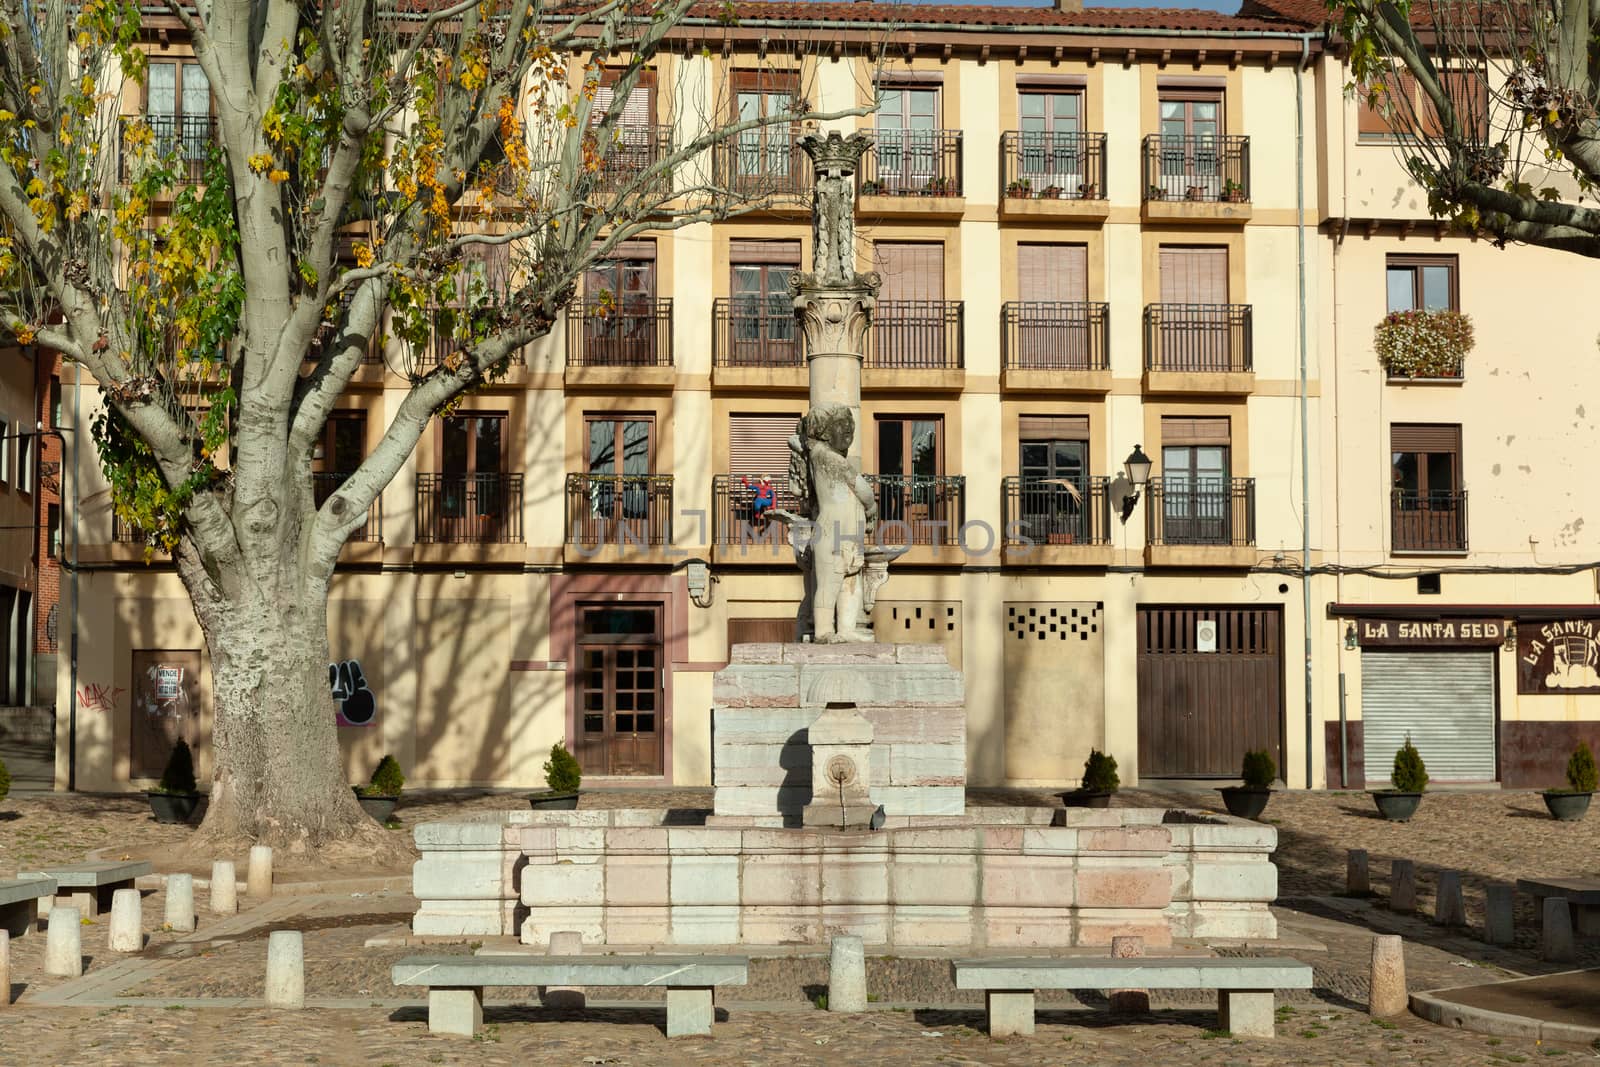 Plaza Sta. María del Camino, Leon, Spain by vlad-m